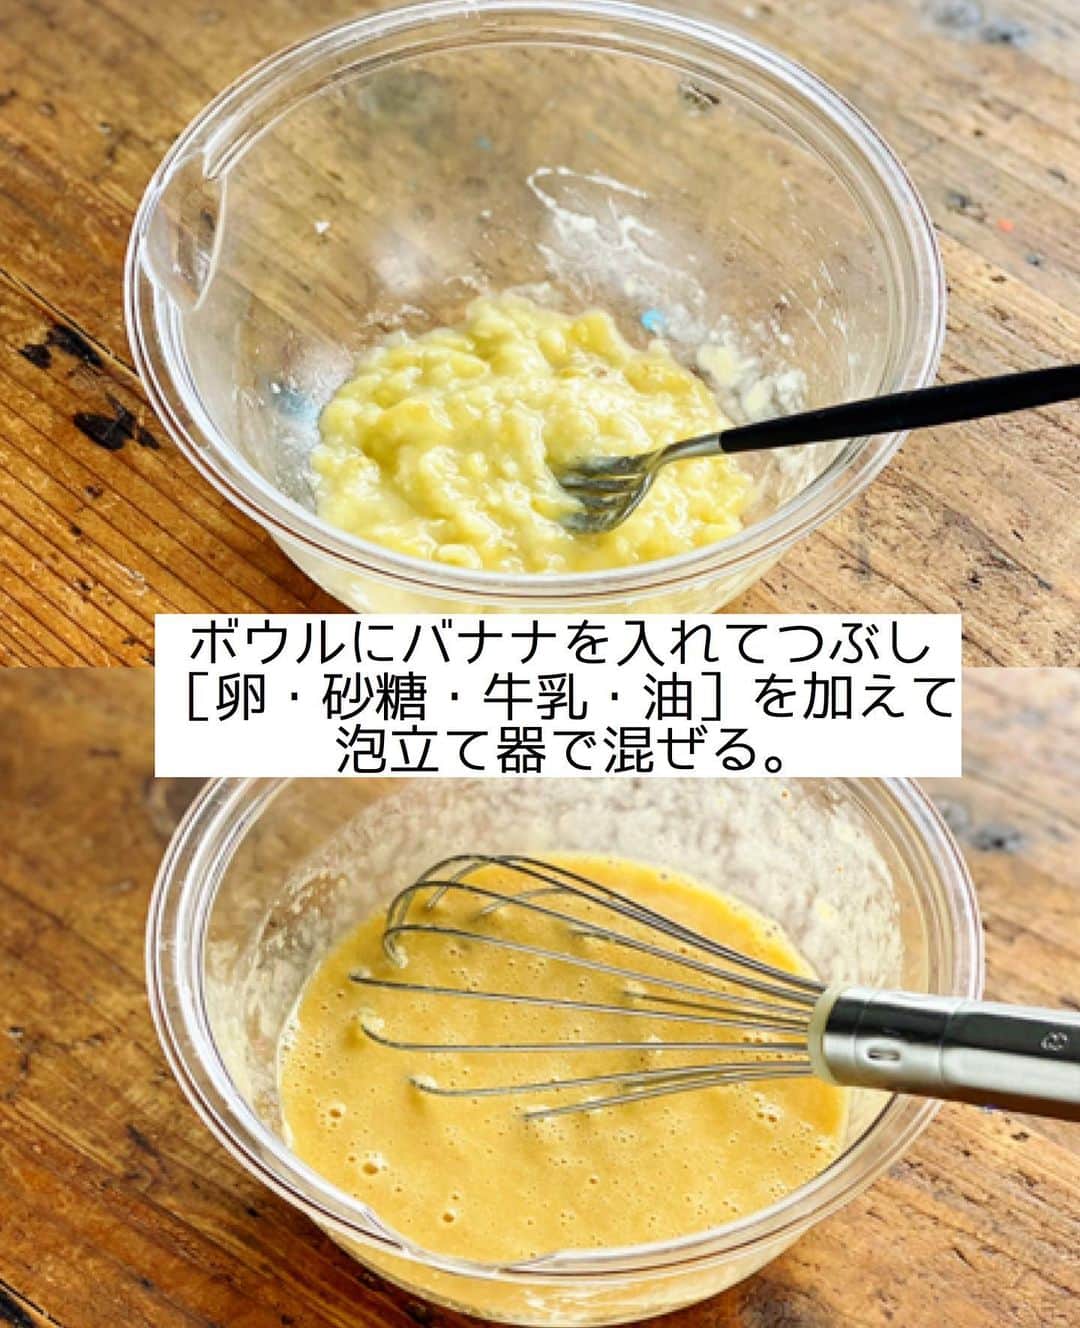 Mizuki【料理ブロガー・簡単レシピ】さんのインスタグラム写真 - (Mizuki【料理ブロガー・簡単レシピ】Instagram)「・﻿ 【#レシピ 】ーーーーーーー﻿ ホットケーキミックスで！﻿ チョコバナナッツマフィン﻿ ーーーーーーーーーーーーー﻿ ﻿ ﻿ ﻿ おはようございます(*^^*)﻿ ﻿ 今日はホケミスイーツ☆﻿ ''みんなの好き''を集約した﻿ \チョコバナナッツマフィン/﻿ をご紹介させていただきます♡﻿ ﻿ バナナをまるっと加えた生地は﻿ しっとりと香りよく仕上がり﻿ チョコナッツのザクザク感と﻿ 抜群の相性ですよ〜(*´艸`)﻿ ﻿ バターなし！混ぜて焼くだけ！﻿ の超簡単レシピです♩﻿ お気軽にお試し下さいね(*^^*)﻿ ﻿ ﻿ ﻿ ＿＿＿＿＿＿＿＿＿＿＿＿＿＿＿＿＿＿＿＿﻿ 【マフィン型1台(6個)分】﻿ バナナ...1本﻿ ●卵...1個﻿ ●砂糖...大2﻿ ●牛乳...60ml﻿ ●サラダ油...60g﻿ ホットケーキミックス...150g﻿ 板チョコ...1枚(50g)﻿ クルミ...20g﻿ ﻿ (準備)型にグラシンカップを敷く。オーブンを180度に予熱する。チョコとクルミは刻んでおく。﻿ 1.ボウルにバナナを入れてフォークでつぶし、●を加えて泡立て器で混ぜる。﻿ 2.ホットケーキミックスを加えて混ぜ、粉っぽさが残っているうちにチョコとクルミも加えて混ぜる。﻿ 3.型に注ぎ、予熱したオーブンで20分焼く。﻿ ￣￣￣￣￣￣￣￣￣￣￣￣￣￣￣￣￣￣￣￣﻿ ﻿ ﻿ ﻿ 《ポイント》﻿ ♦︎私が使用したバナナは皮付き130gです♩﻿ ♦︎チョコレートはブラック、クルミはローストタイプを使用しています♩﻿ ♦︎チョコは細かめに、クルミは大きめに刻みました♩﻿ ♦︎マフィンカップでも作れます♩﻿ ﻿ ﻿ ﻿ ﻿ ﻿ ﻿ ﻿ ﻿ ⭐️発売中⭐️3刷重版が決まりました😭﻿ 本当にありがとうございます(涙)﻿ _____________________________________﻿ \15分でいただきます/﻿ 📕#Mizukiの2品献立 📕﻿ (9月24日発売・マガジンハウス)﻿ ￣￣￣￣￣￣￣￣￣￣￣￣￣￣￣￣￣﻿ ﻿ 忙しい私たちには﻿ 2品くらいがちょうどいい！﻿ 『しんどくない献立、考えました』﻿ ￣￣￣￣￣￣￣￣￣￣￣￣￣￣￣￣﻿ ﻿ ーーーーーPART.1 ーーーーー﻿ 【Mizukiのお墨つき！２品献立ベスト10】﻿ 約15分でできる10献立をご紹介！﻿ メインは全部フライパン、副菜はレンチンor混ぜるだけ♡﻿ ﻿ ーーーーーPART.2 ーーーーー﻿ 【フライパンひとつ！今夜のメインおかず】﻿ 献立の主役になる肉や魚のおかず50品！﻿ Part3の副菜と組み合わせれば﻿ 献立のバリエーションが広がりますよ♩﻿ ﻿ ーーーーー PART.3 ーーーーー﻿ 【合間に作れる！ 野菜別かんたん副菜】﻿ レンチンor和えるだけの副菜レシピを﻿ 素材別にたっぷり収録♩﻿ ﻿ ーーーーー番外編ーーーーー﻿ 【ひとつで満足！ご飯＆麺】﻿ 【具だくさん！おかずスープ】﻿ 【オーブンいらずのおやつレシピ】﻿ ￣￣￣￣￣￣￣￣￣￣￣￣￣￣￣￣￣￣﻿ (ハイライトにリンク🔗あります💗)﻿ ﻿ ﻿ ﻿ ﻿ ＿＿＿＿＿＿＿＿＿＿＿＿＿＿＿＿＿＿﻿ レシピを作って下さった際や﻿ レシピ本についてのご投稿には﻿ タグ付け( @mizuki_31cafe )して﻿ お知らせいただけると嬉しいです😊💕﻿ ￣￣￣￣￣￣￣￣￣￣￣￣￣￣￣￣￣￣﻿ ﻿ ﻿ ﻿ ﻿ #ホットケーキミックス#マフィン#チョコ#バナナ#お菓子#Mizuki#簡単レシピ#時短レシピ#節約レシピ#料理#フーディーテーブル#マカロニメイト#おうちごはん#デリスタグラマー#料理好きな人と繋がりたい#食べ物#料理記録#おうちごはんlover#写真好きな人と繋がりたい#foodpic#cooking#recipe#lin_stagrammer#foodporn#yummy#f52grams#チョコバナナッツマフィンm」11月28日 8時48分 - mizuki_31cafe